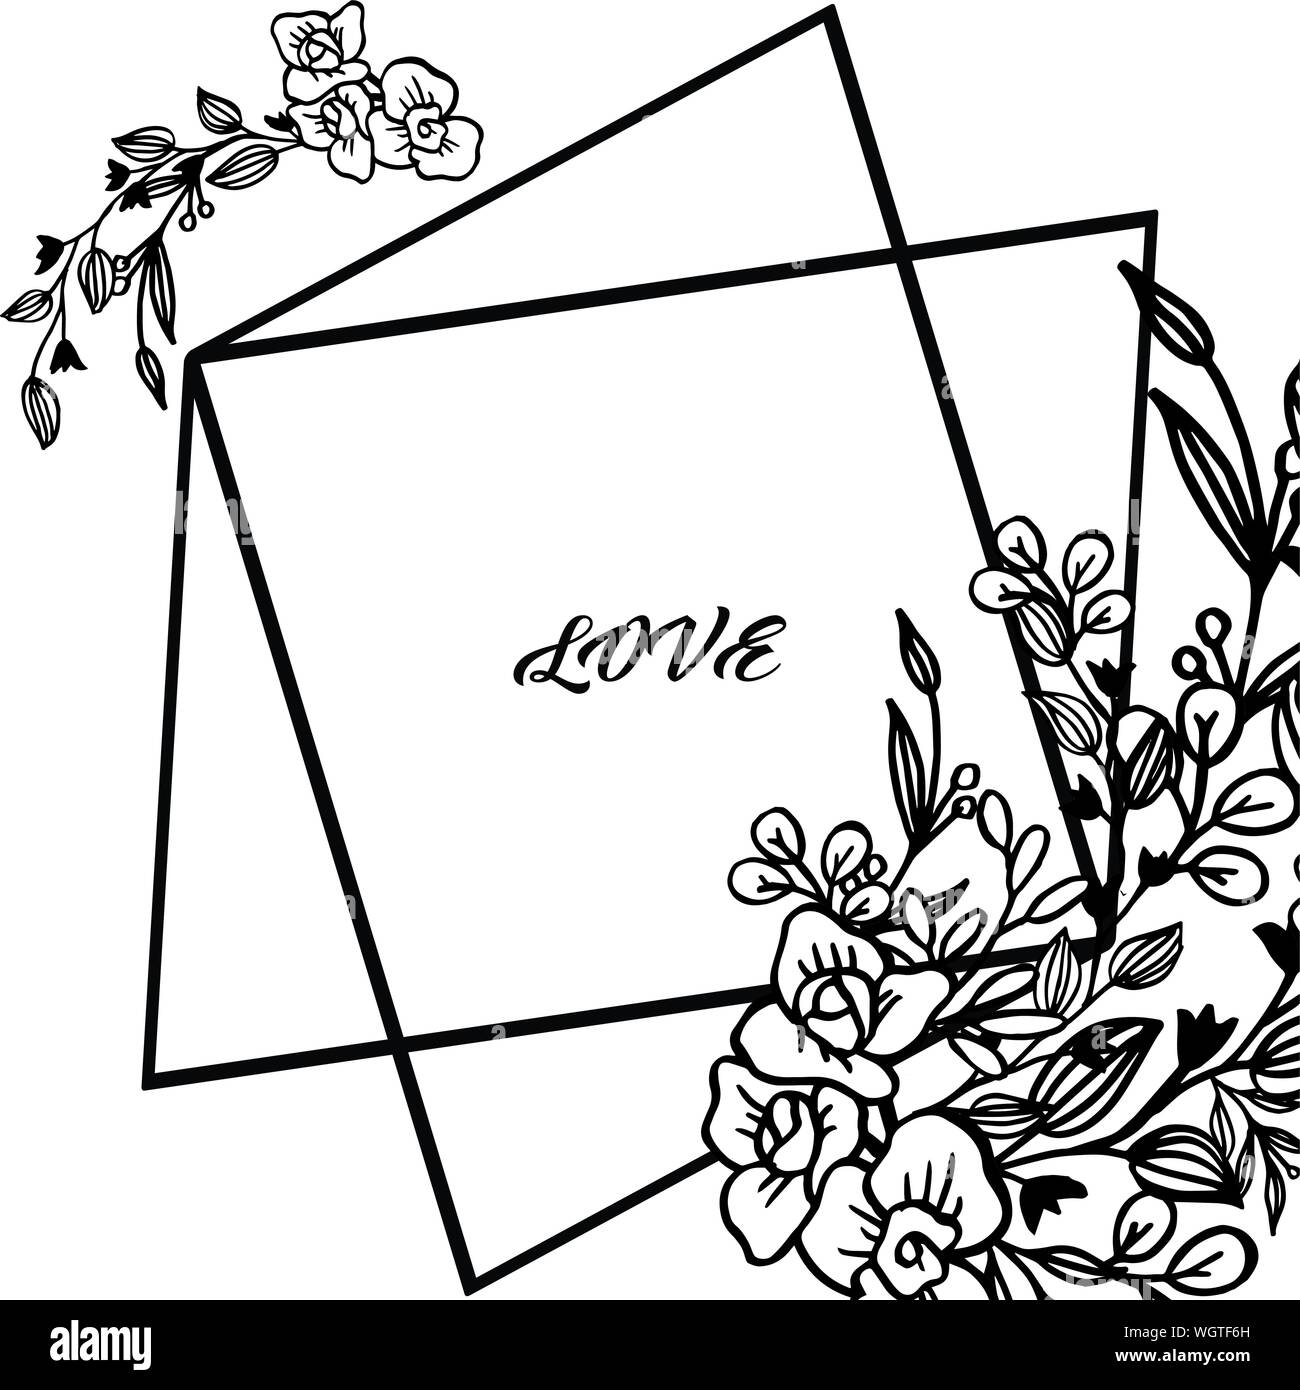 Wallpaper einzigartige Blatt Blume Rahmen, auf weißem Hintergrund isoliert, für farbkühlsystem verschiedener Karte Liebe. Vektor Stock Vektor